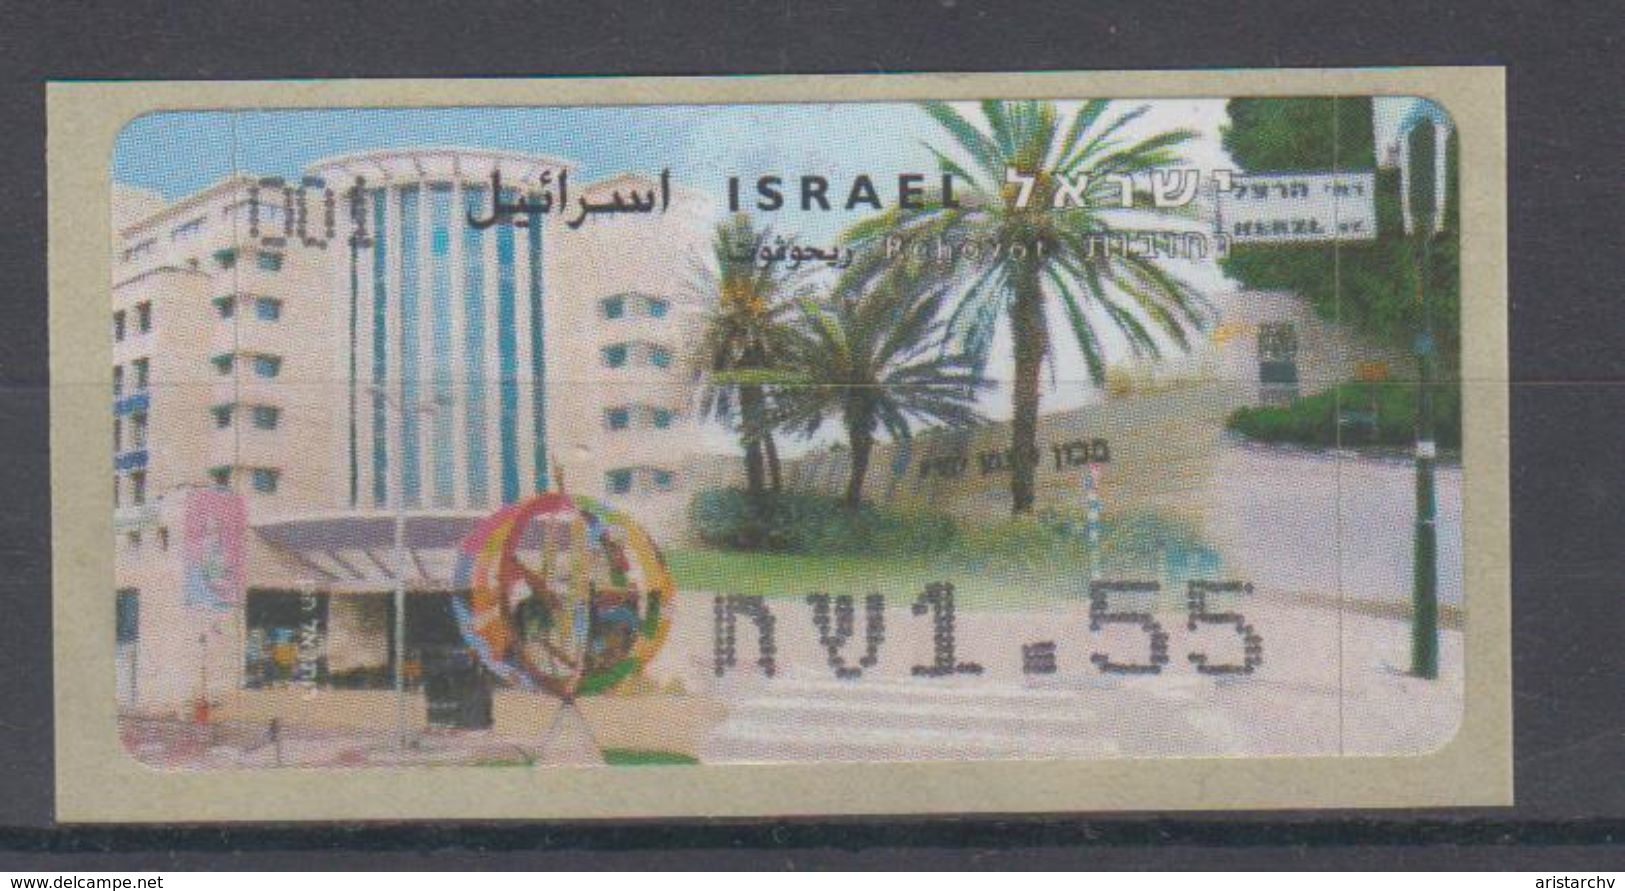 ISRAEL 2006 ATM KLUSSENDORF REHOVOT 1.55 SHEKELS - Vignettes D'affranchissement (Frama)